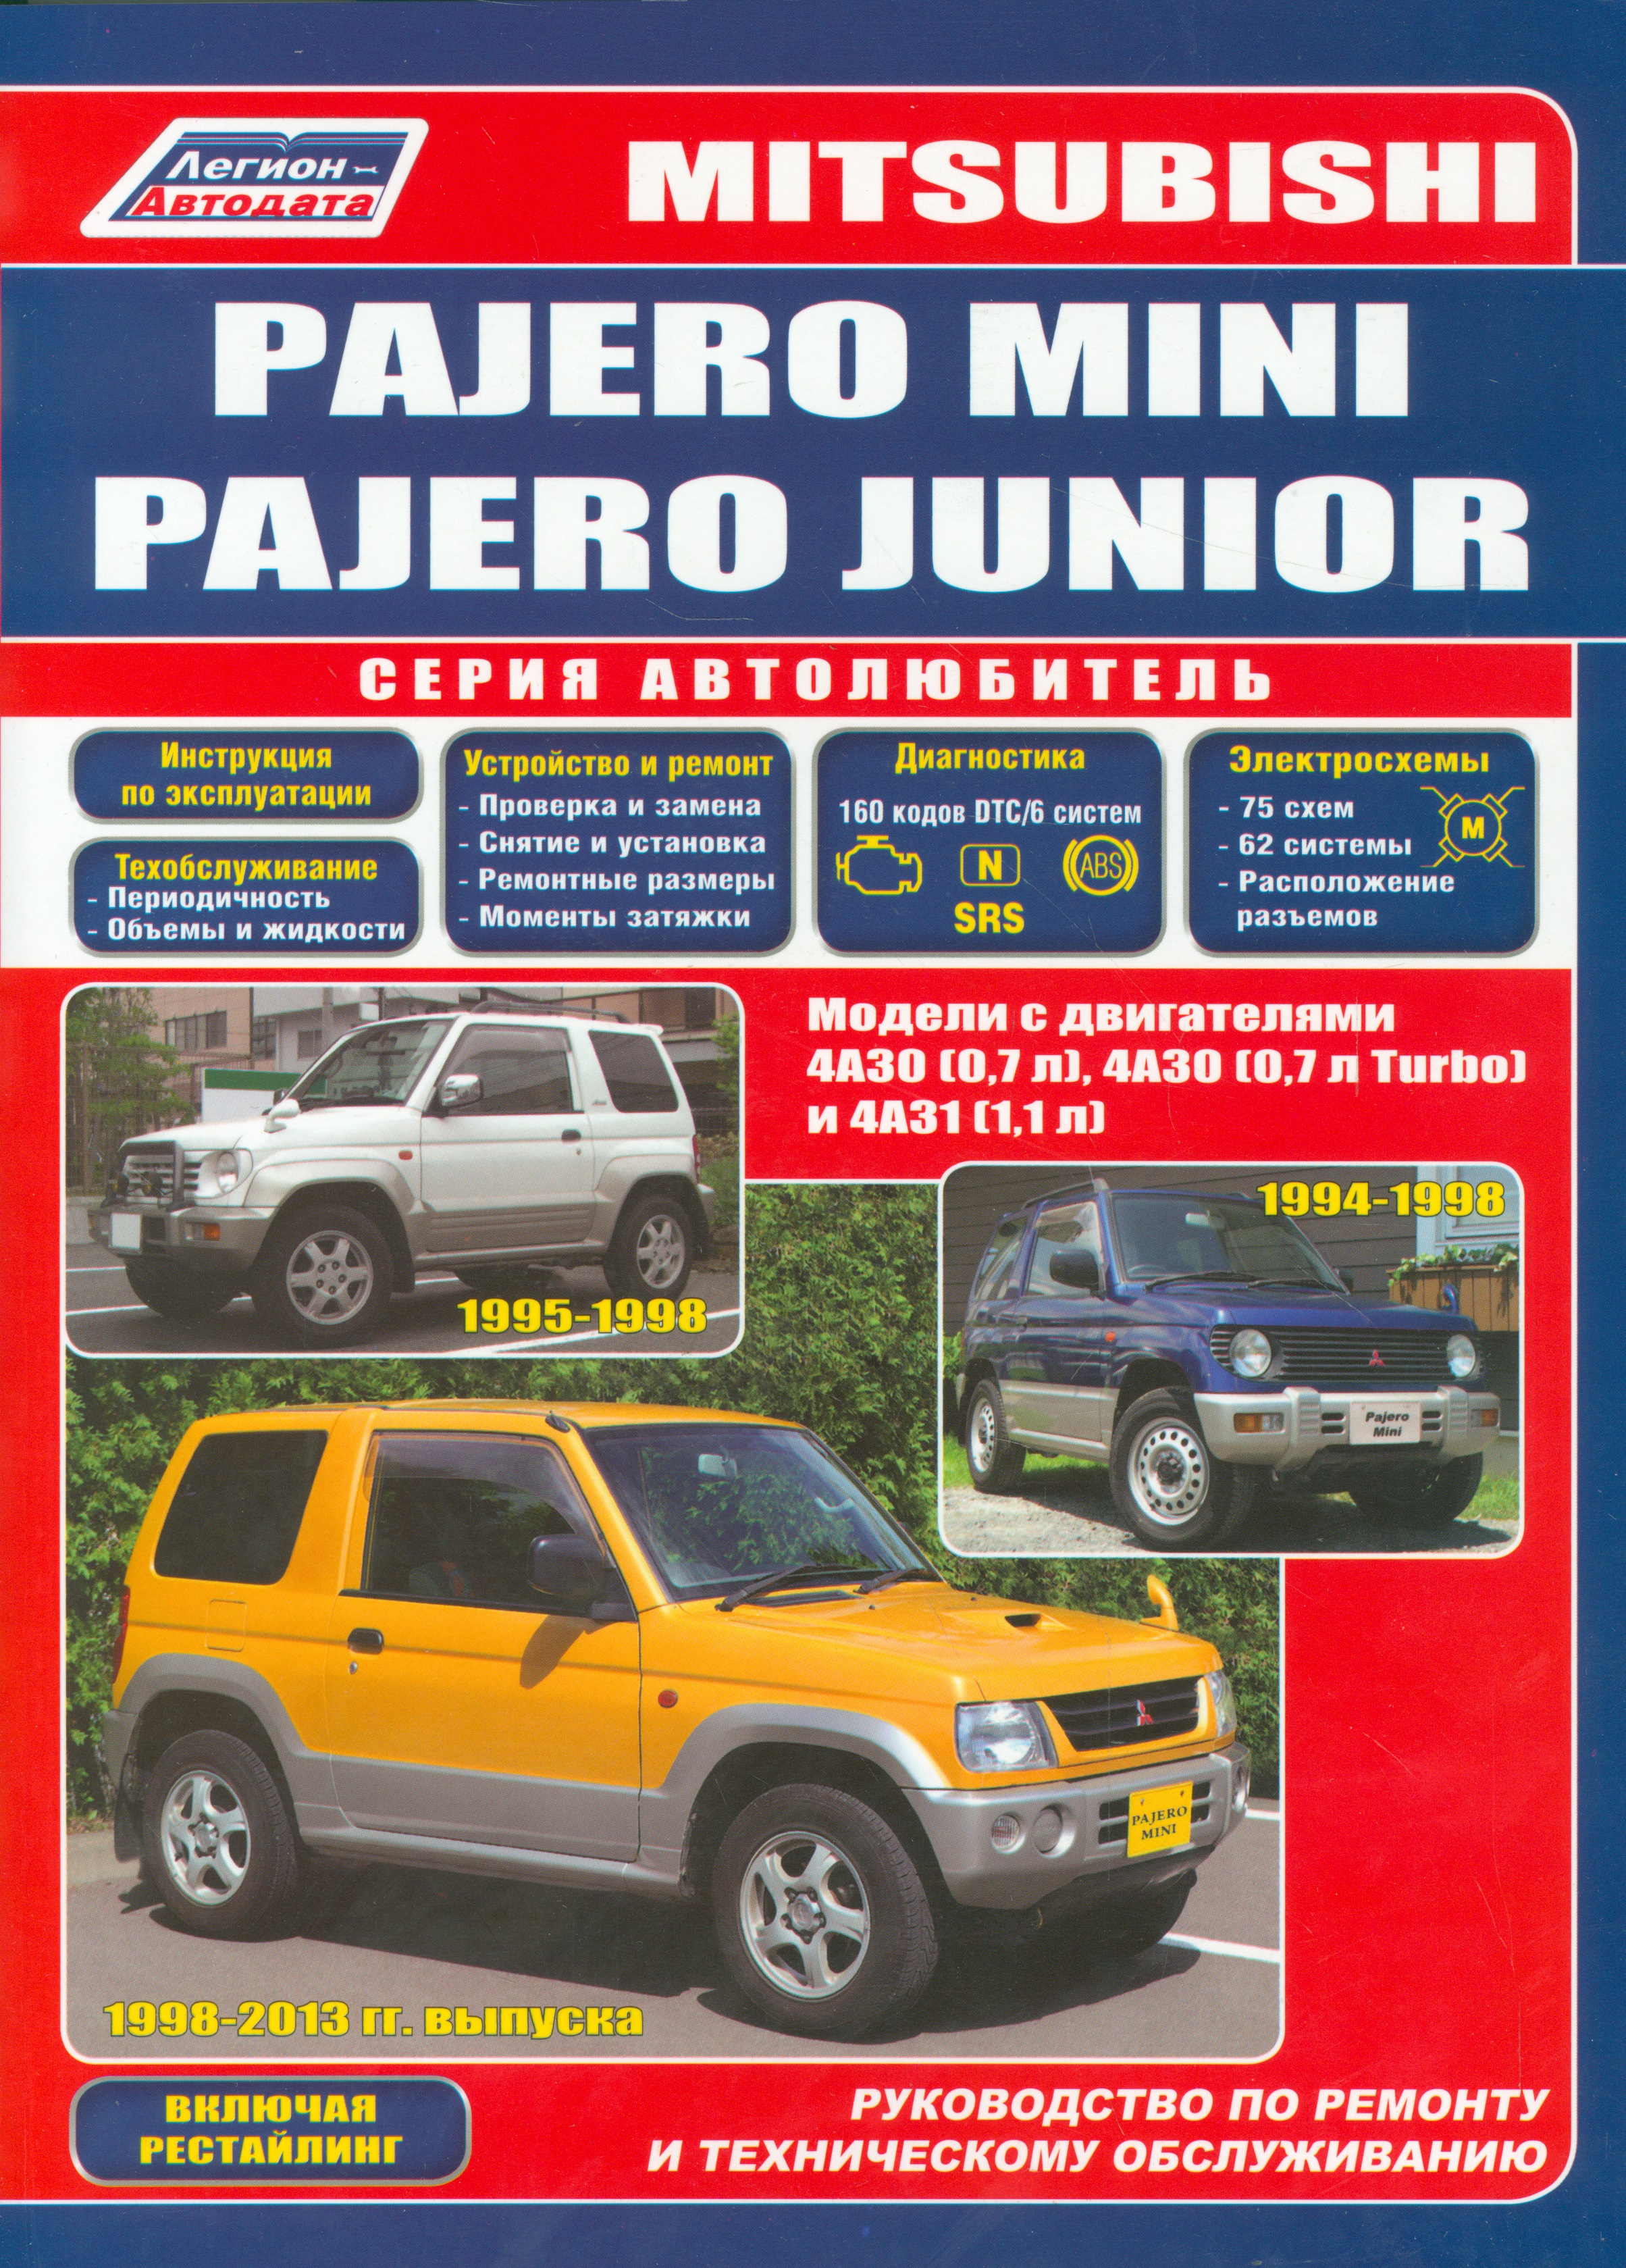 защита раздат коробки и крепеж mitsubishi l200 dc 2008 3мм 2 5 дизель мкпп акпп Mitsubishi Pajero Mini Pajero Junior Мод. с двигат. 4А30 (0,7 л.) 4А30… (мАвтолюбитель)